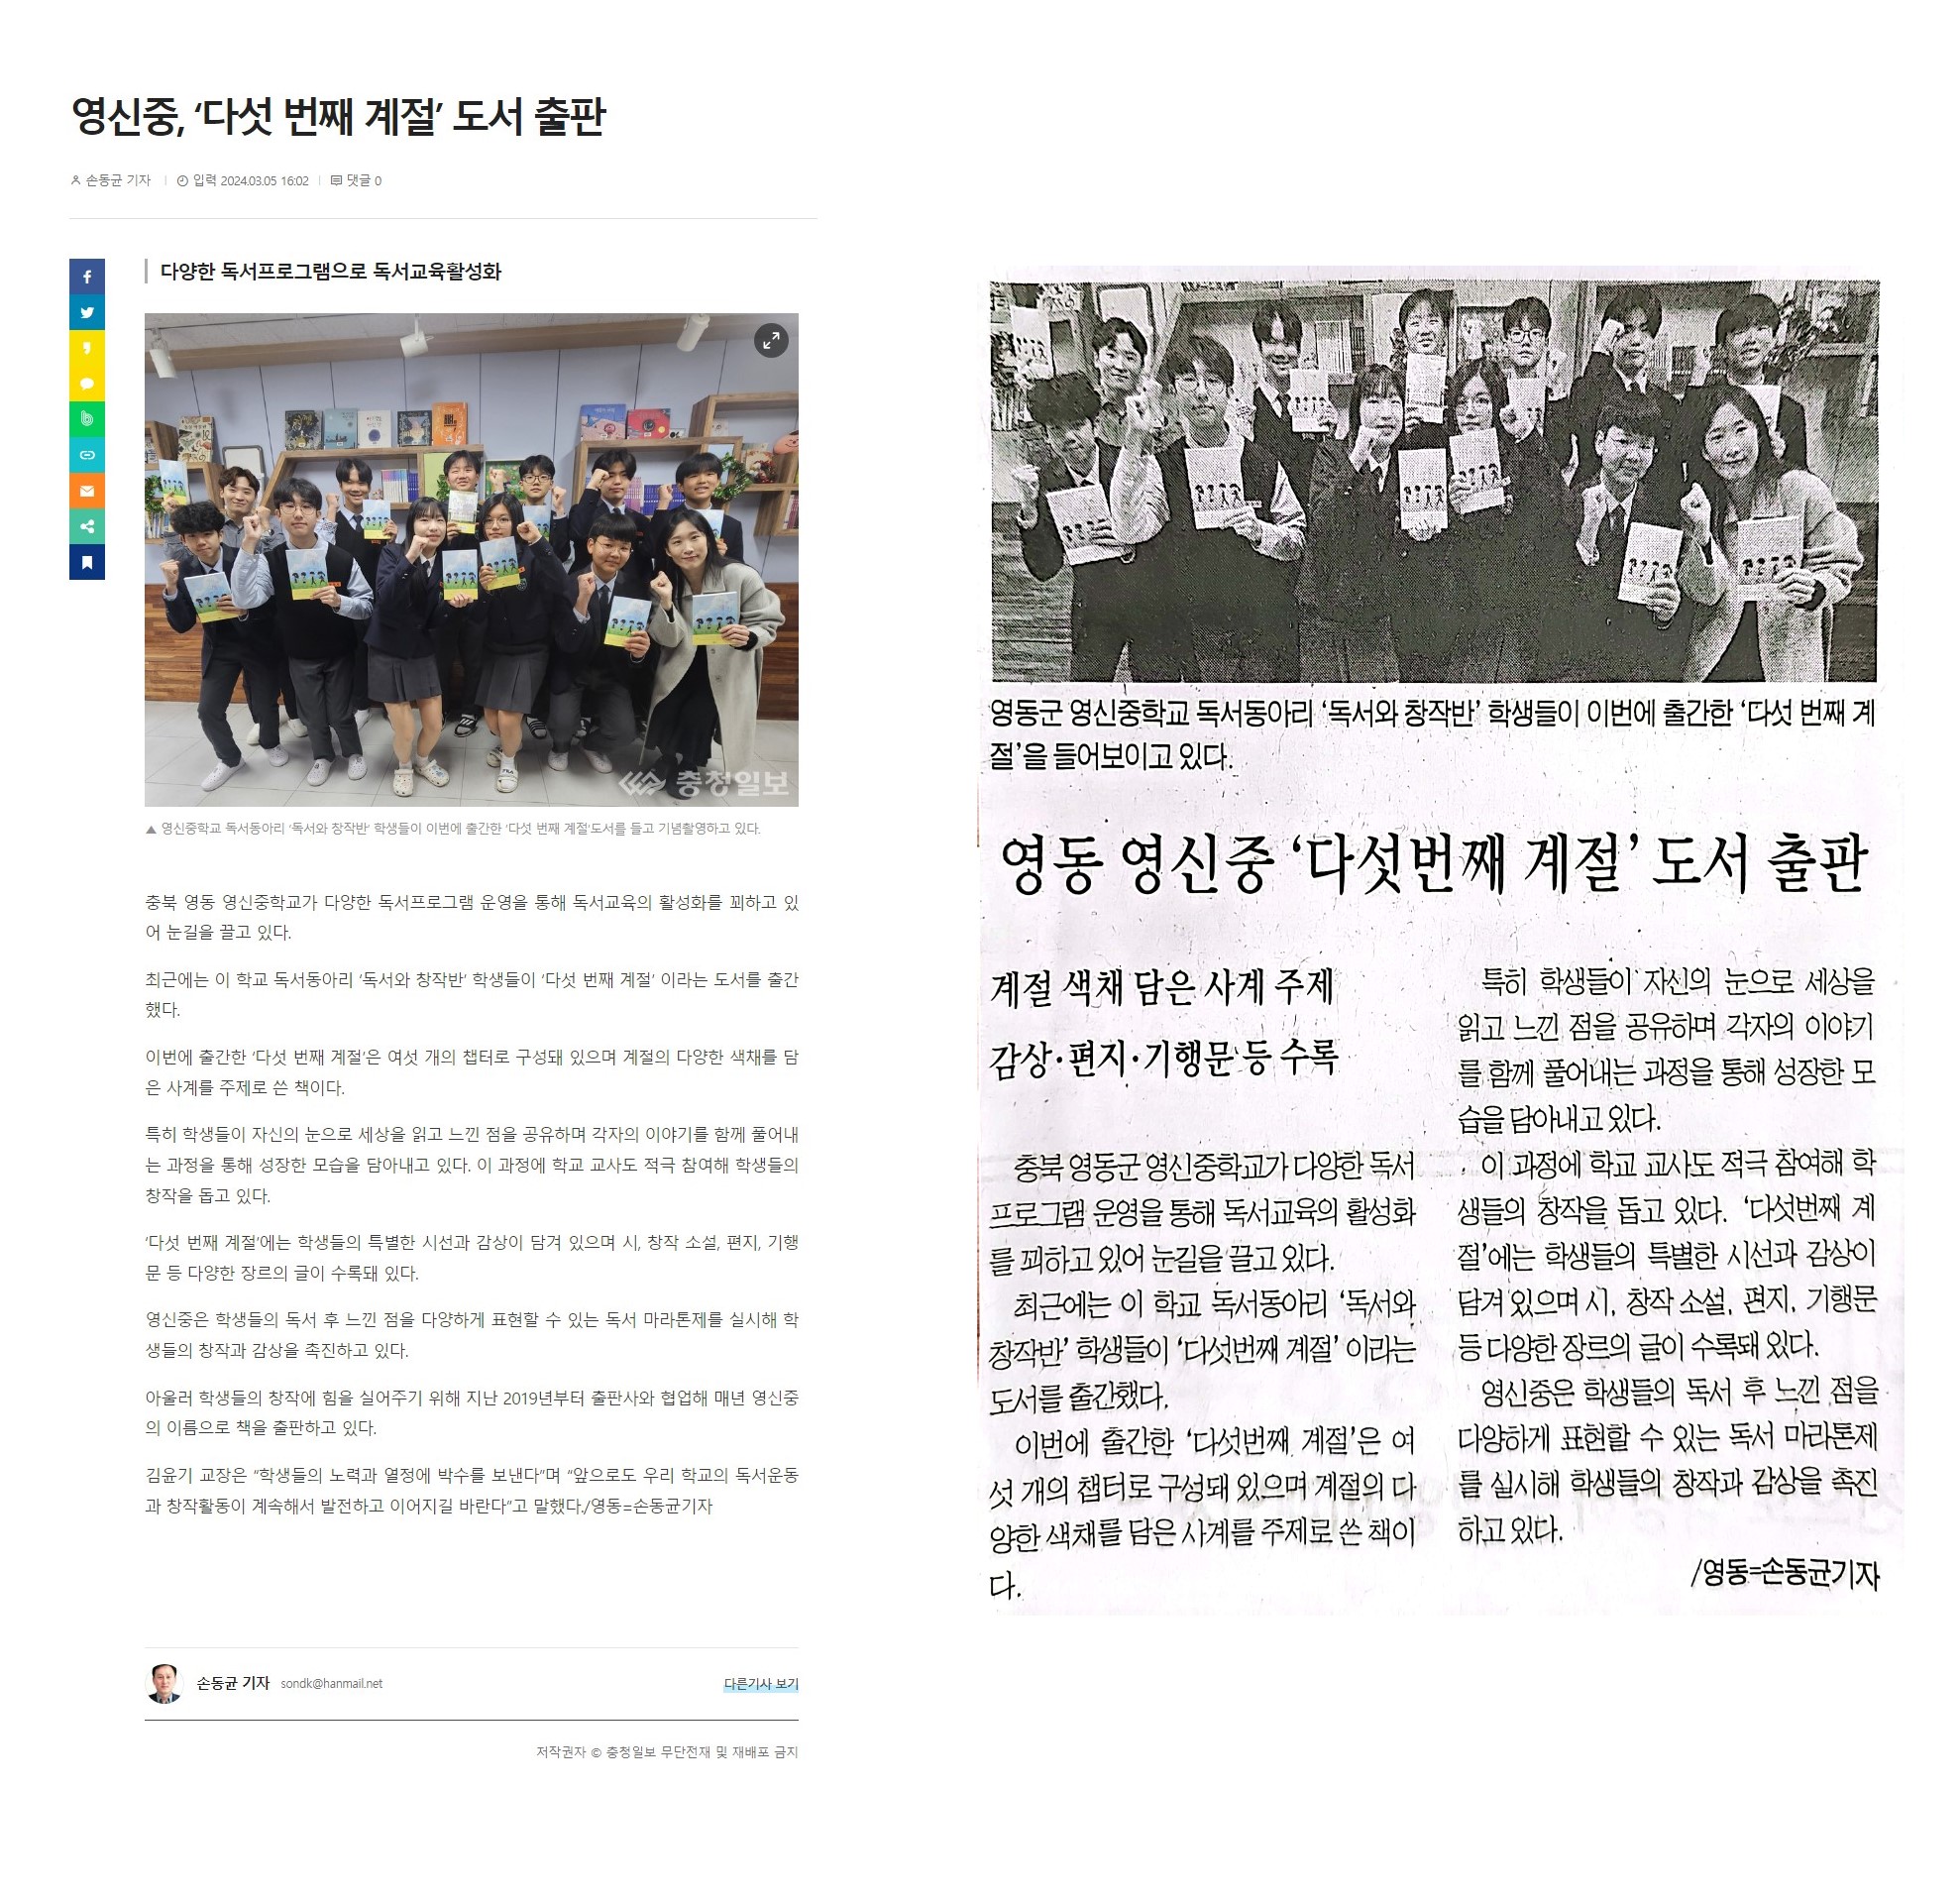 문집 '다섯번째 계절' 출간 기사2_충청일보